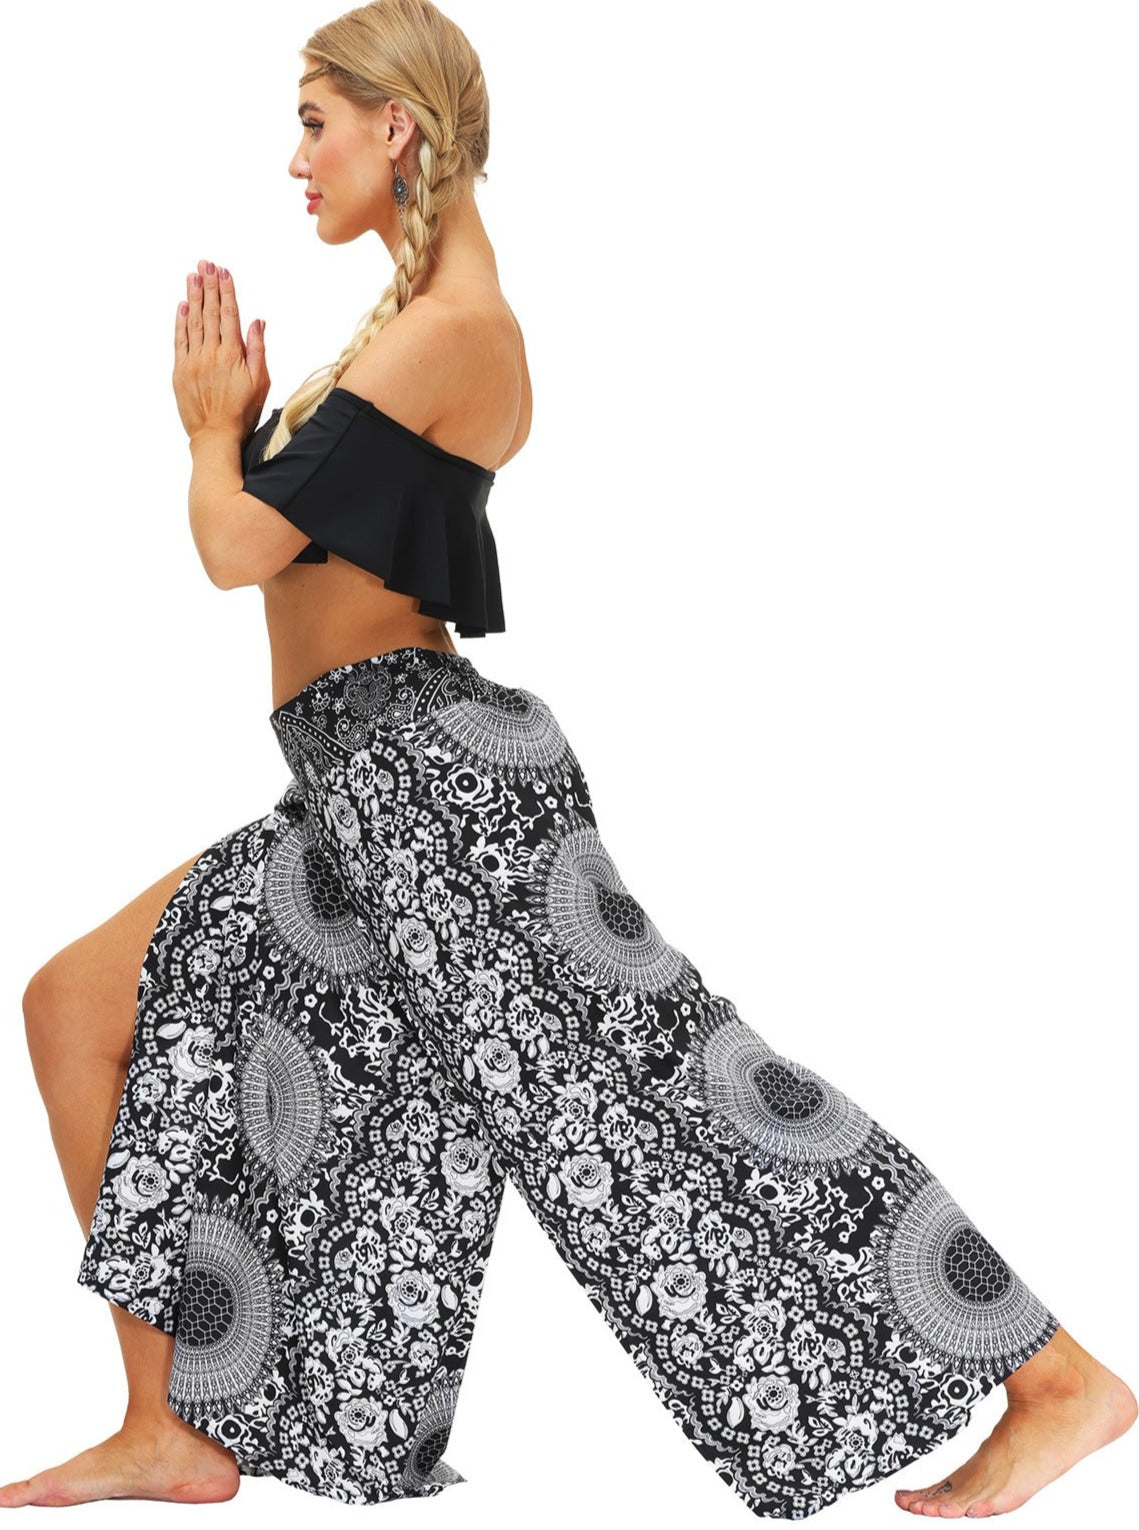 Digital Printed Yoga Dance Outdoor Pants